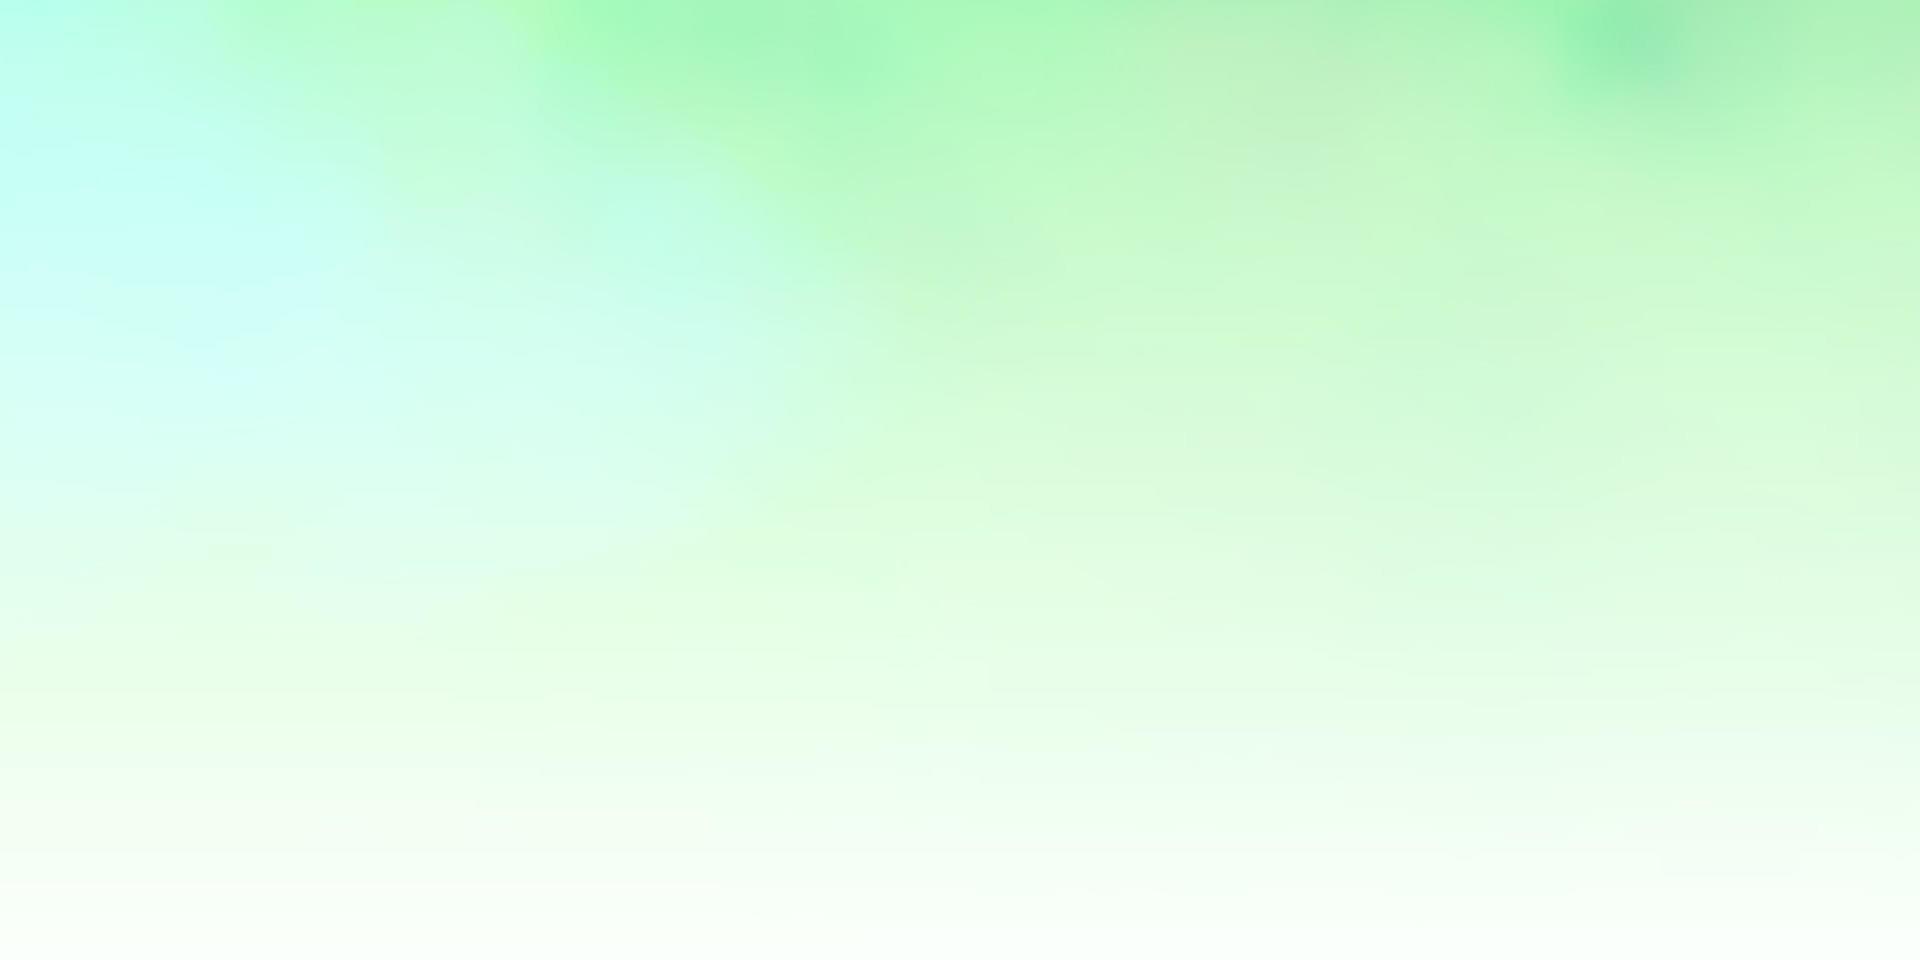 sfondo vettoriale verde chiaro con cumulo.